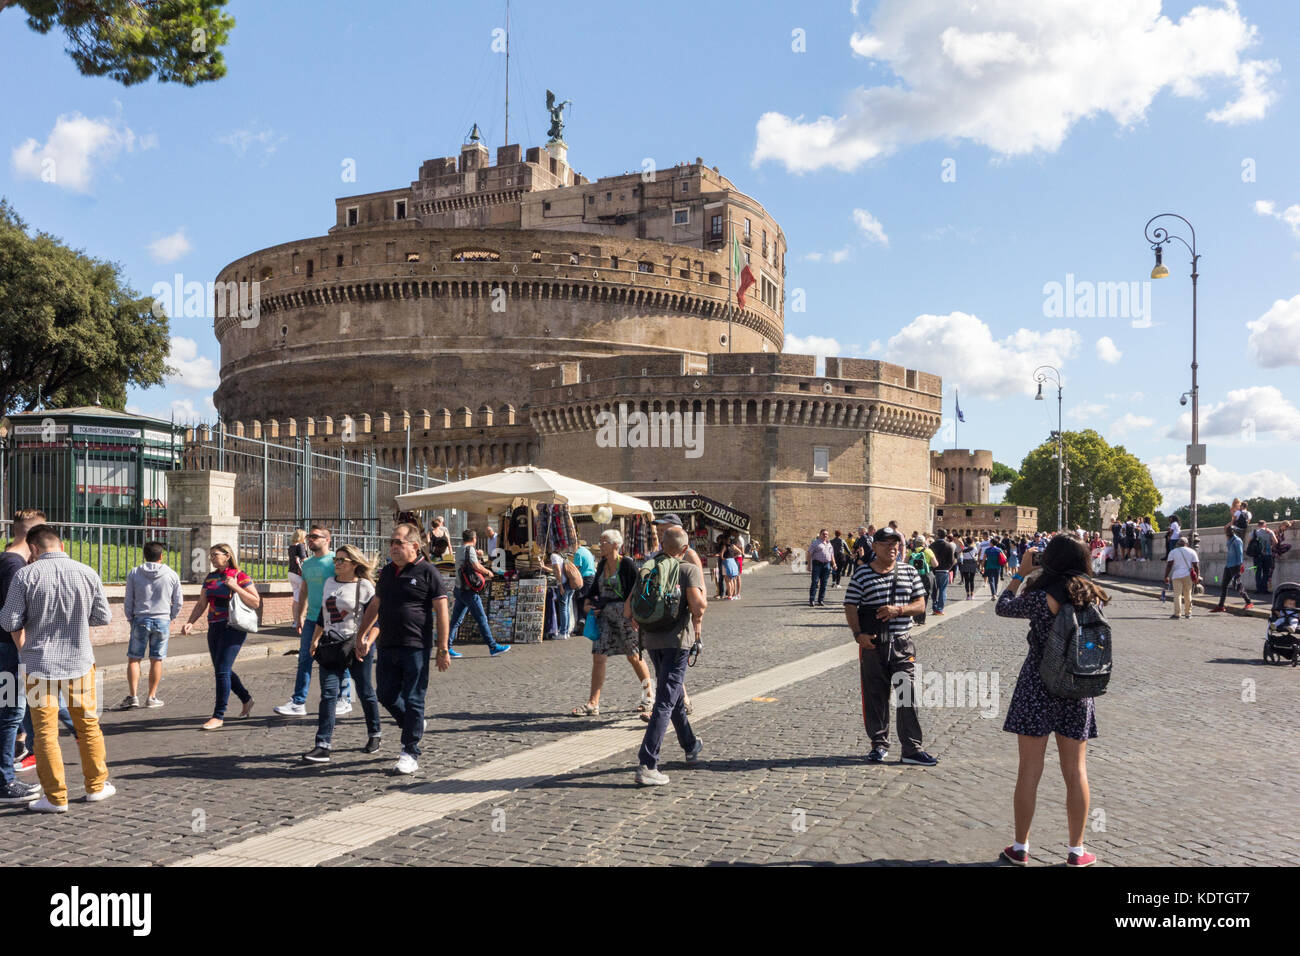 Les touristes de prendre des photos à l'extérieur du Castel Sant'Angelo, Rome, Italie Banque D'Images